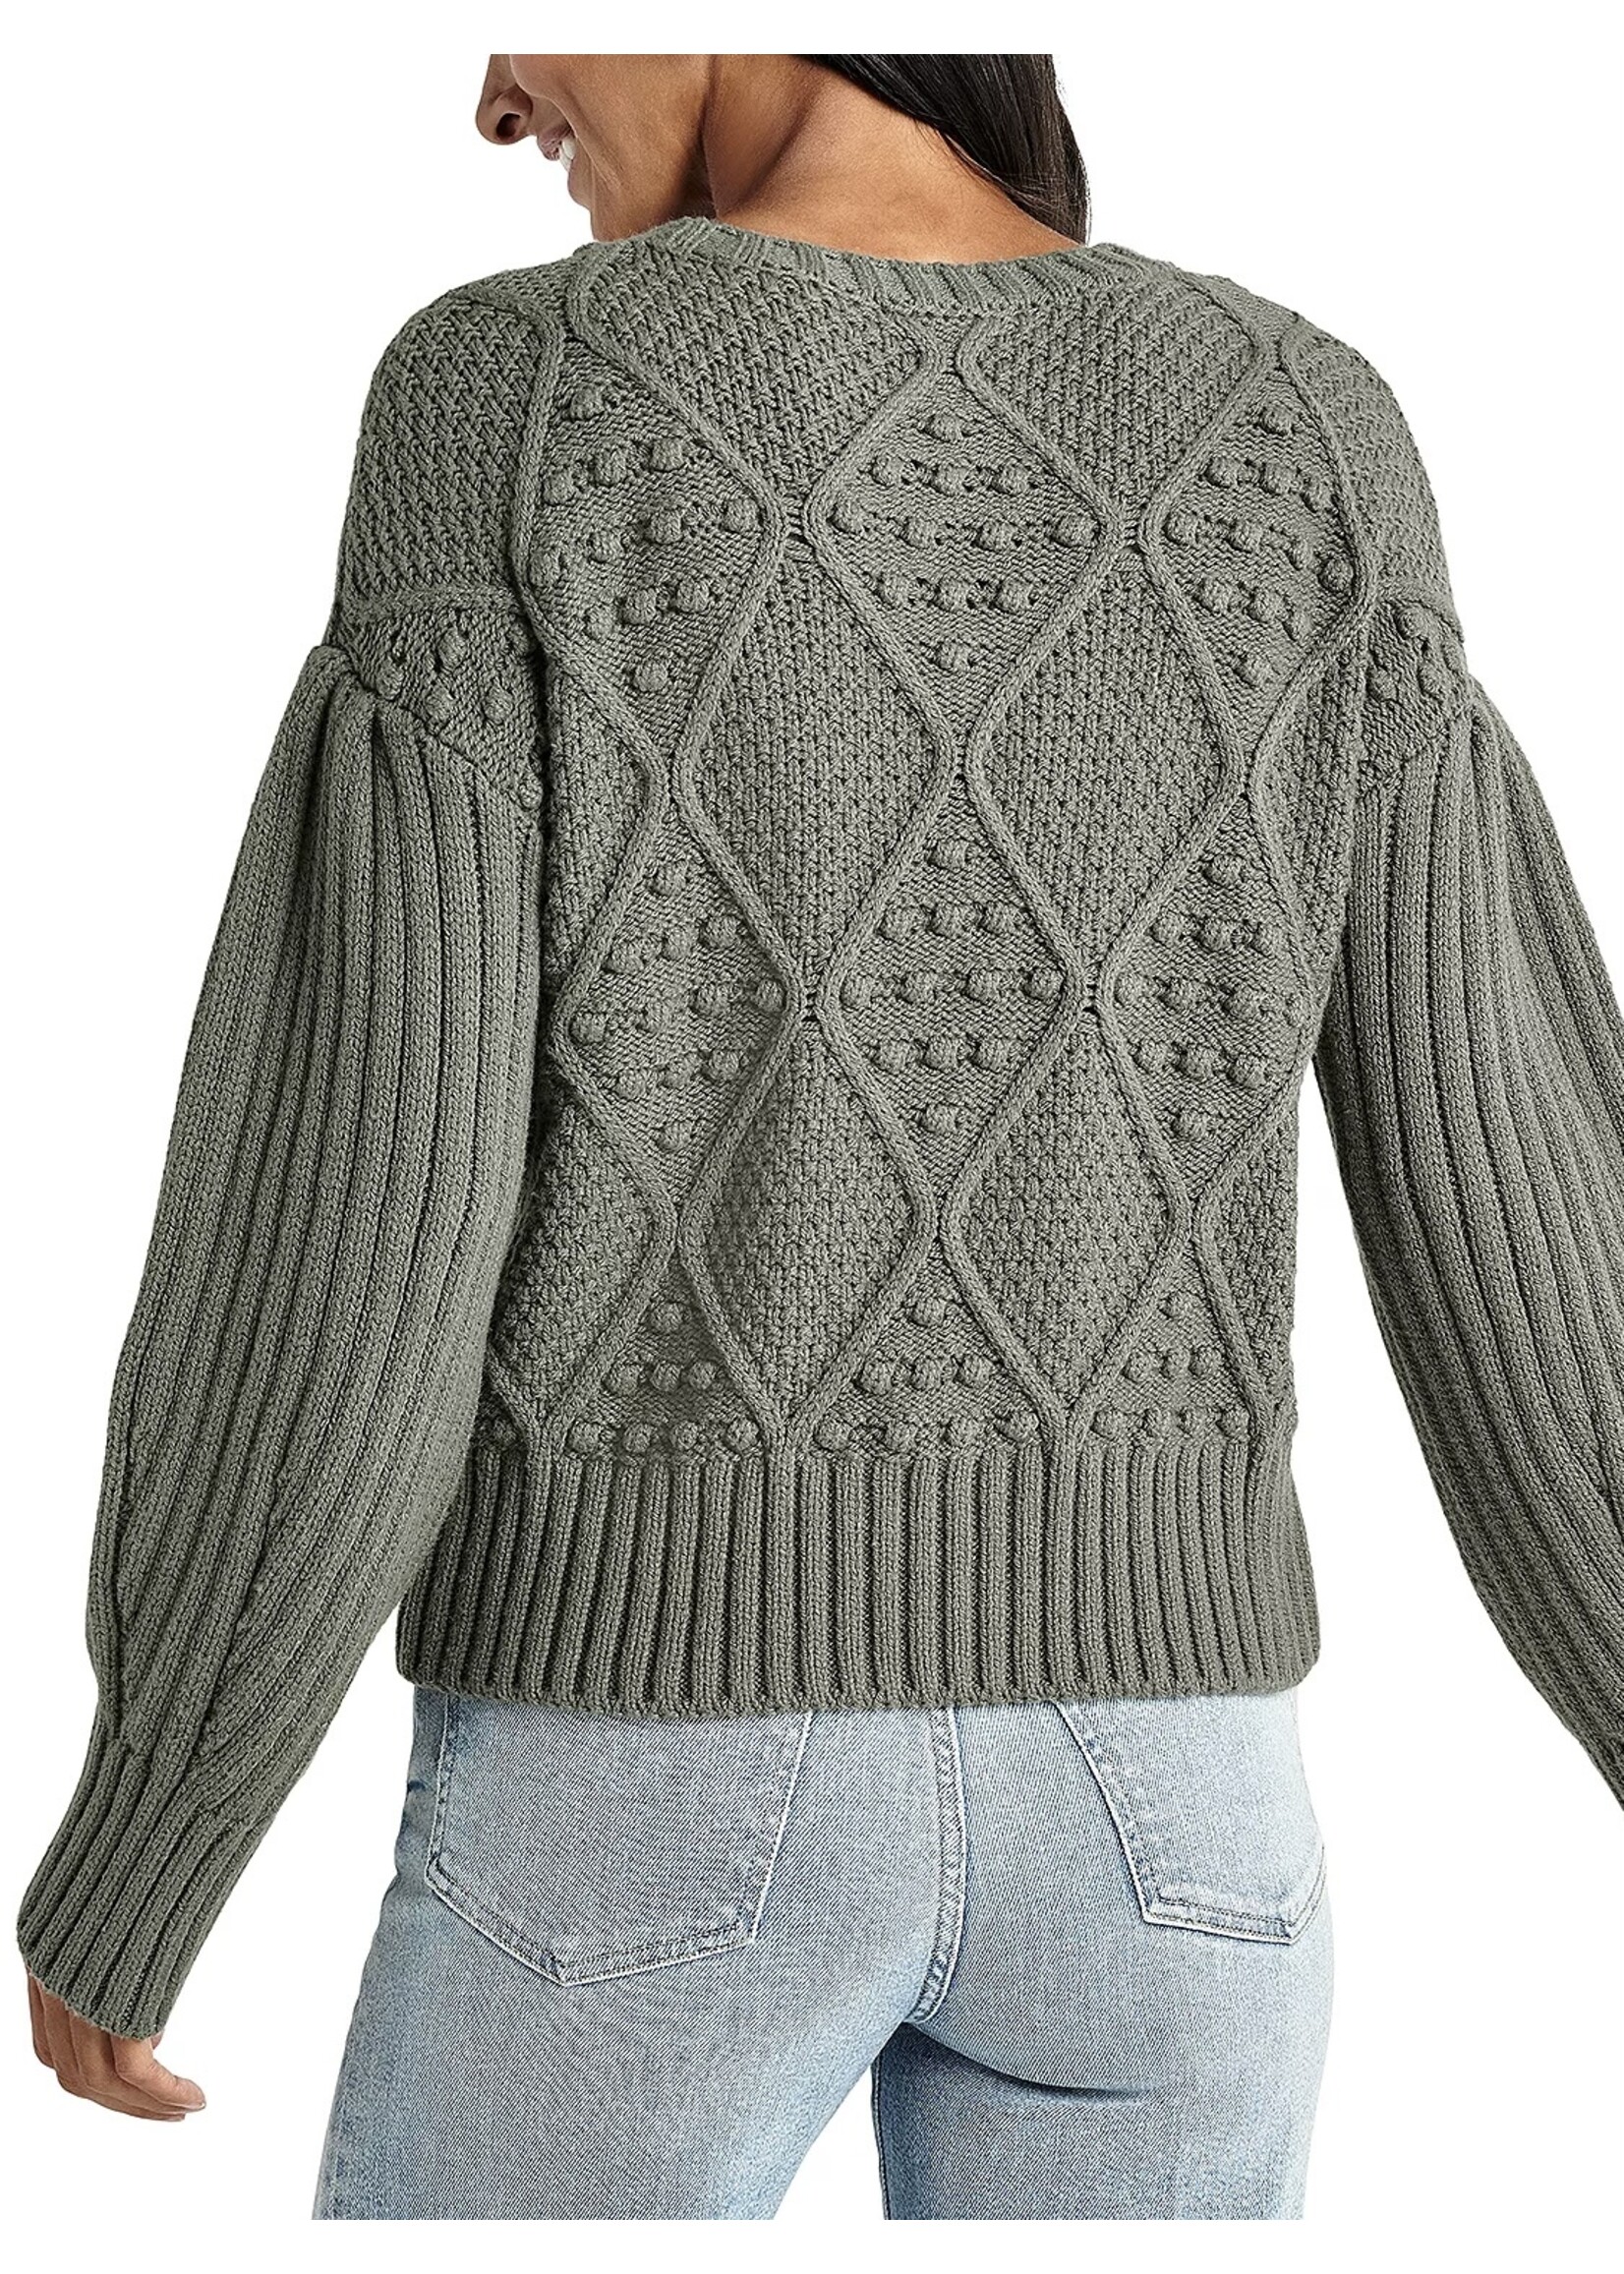 Splendid Splendid - Leonie Bobble Sweater